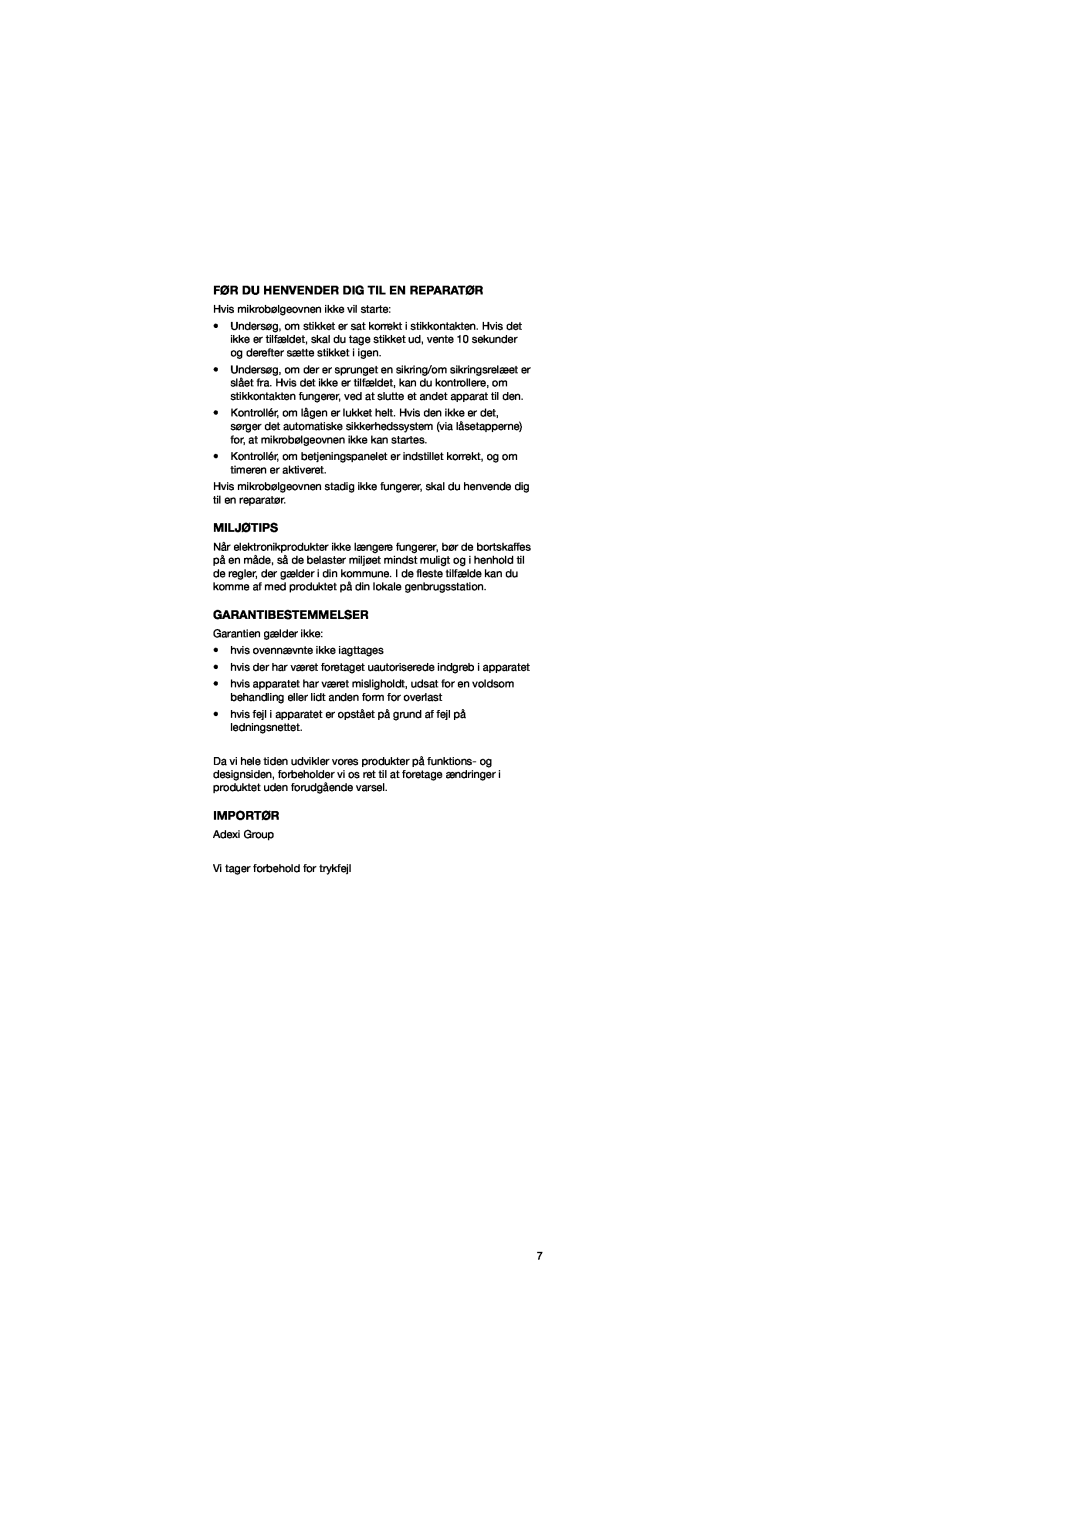 Melissa 753-094 manual Før Du Henvender Dig Til En Reparatør, Miljøtips, Garantibestemmelser, Importør 